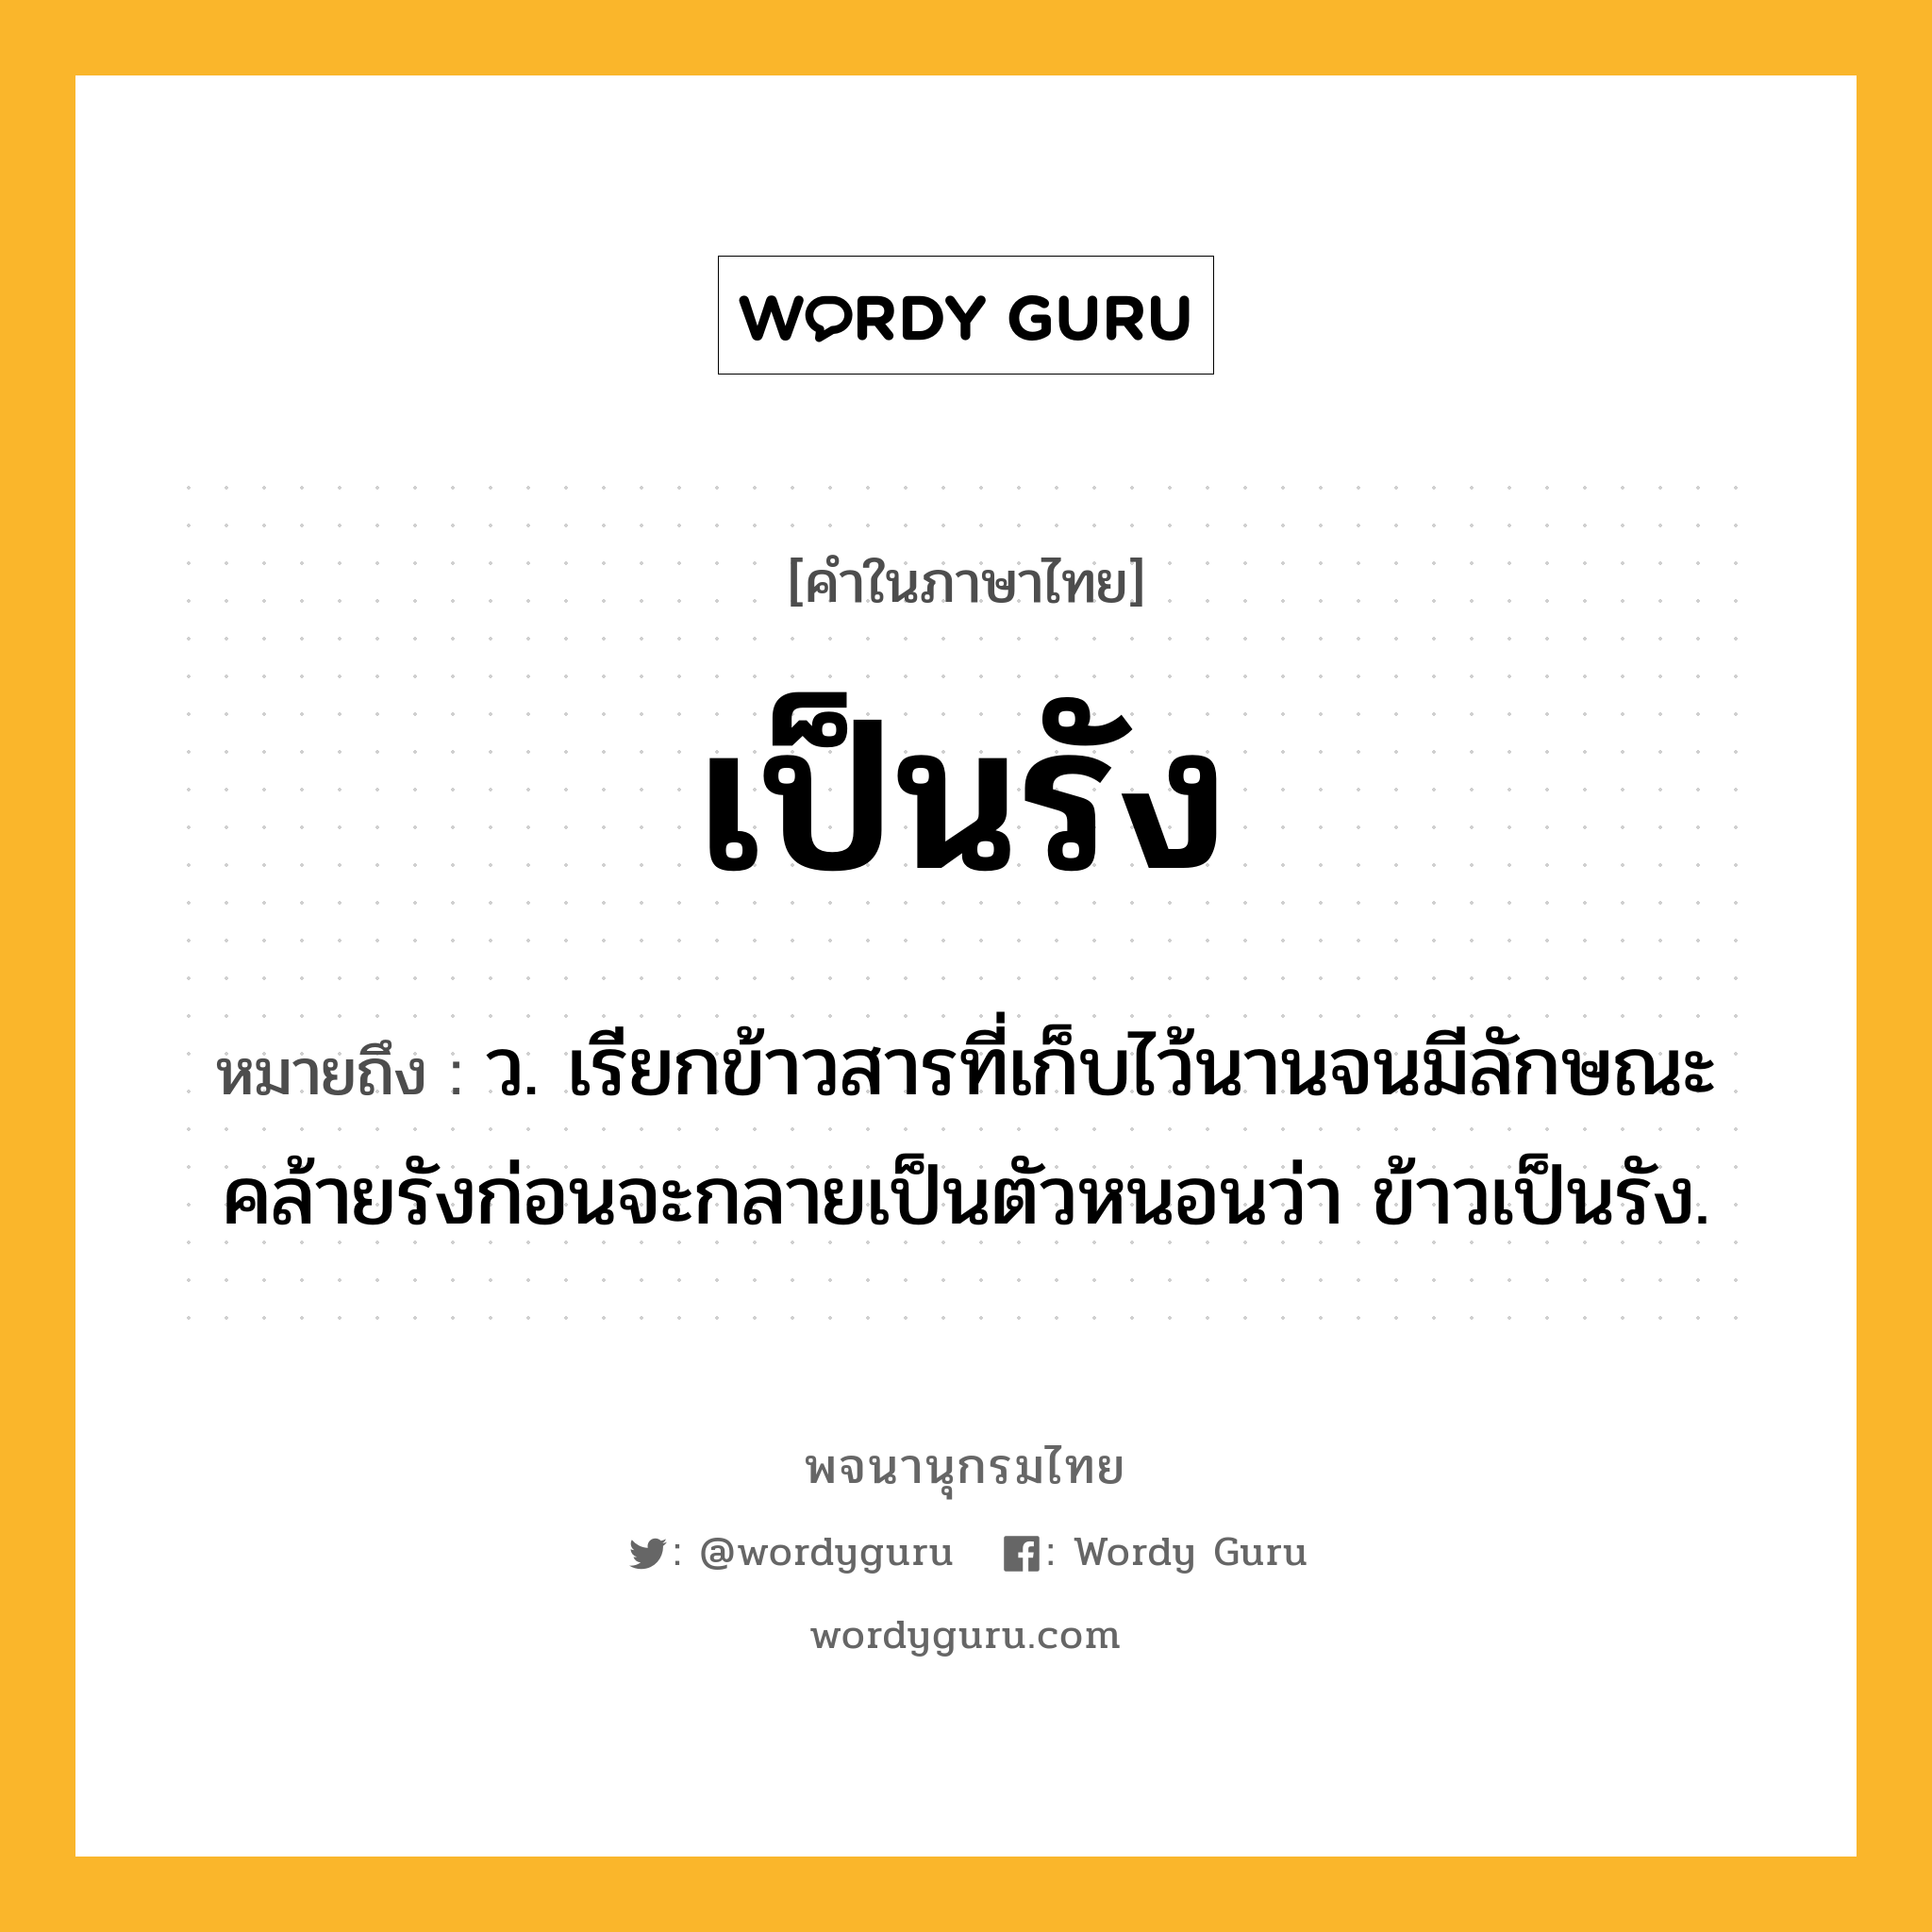 เป็นรัง ความหมาย หมายถึงอะไร?, คำในภาษาไทย เป็นรัง หมายถึง ว. เรียกข้าวสารที่เก็บไว้นานจนมีลักษณะคล้ายรังก่อนจะกลายเป็นตัวหนอนว่า ข้าวเป็นรัง.